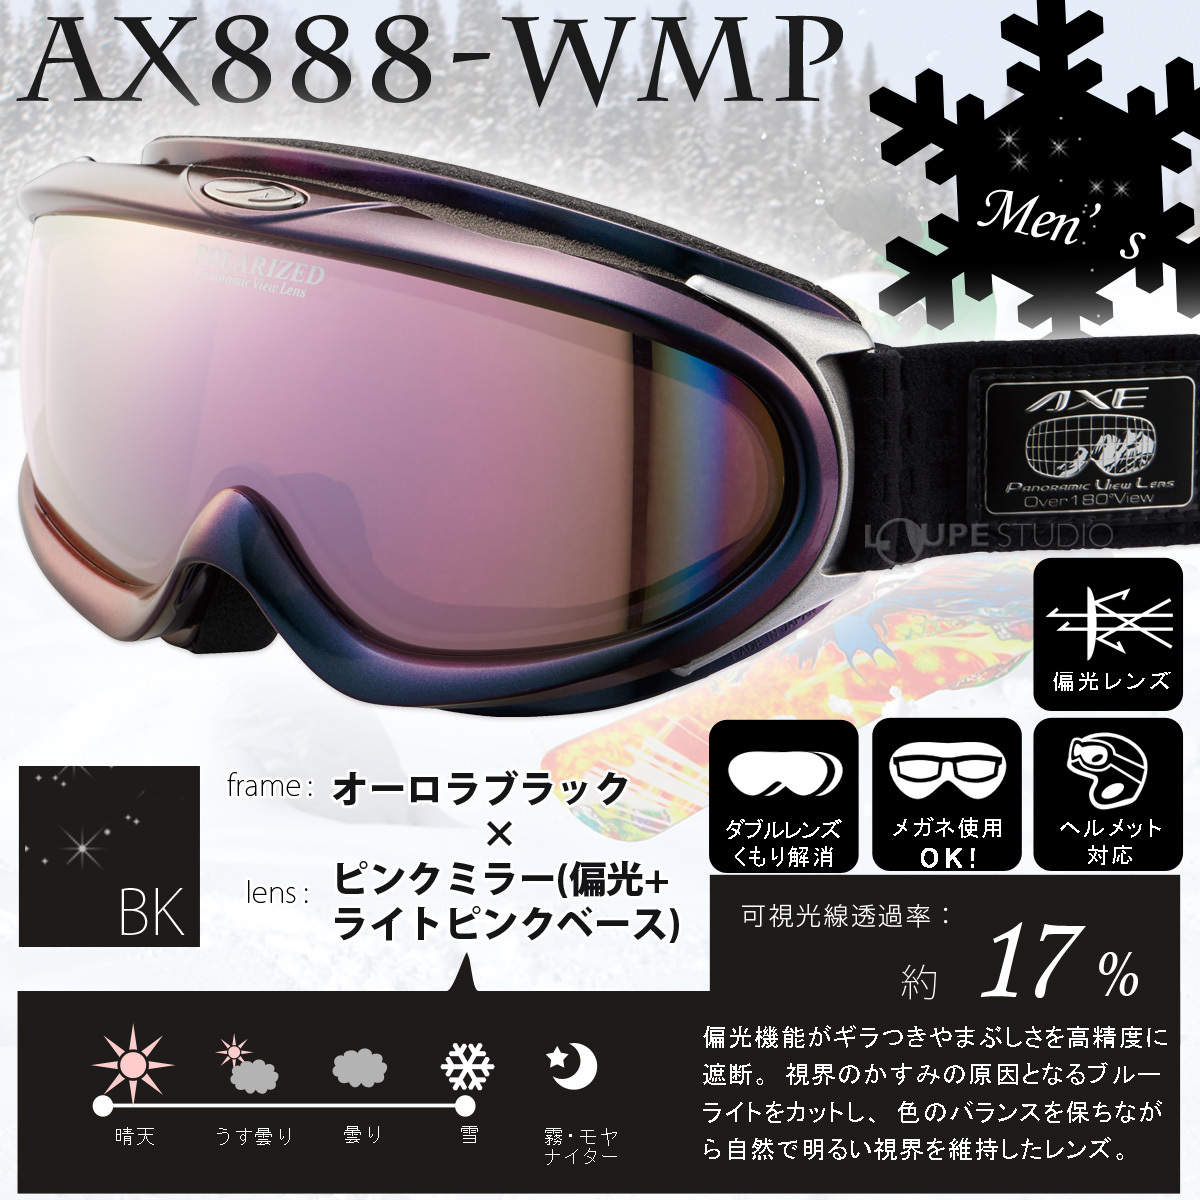 ゴーグル 眼鏡対応 日本製 偏光レンズ AX888-WMP スキー スノーボード 